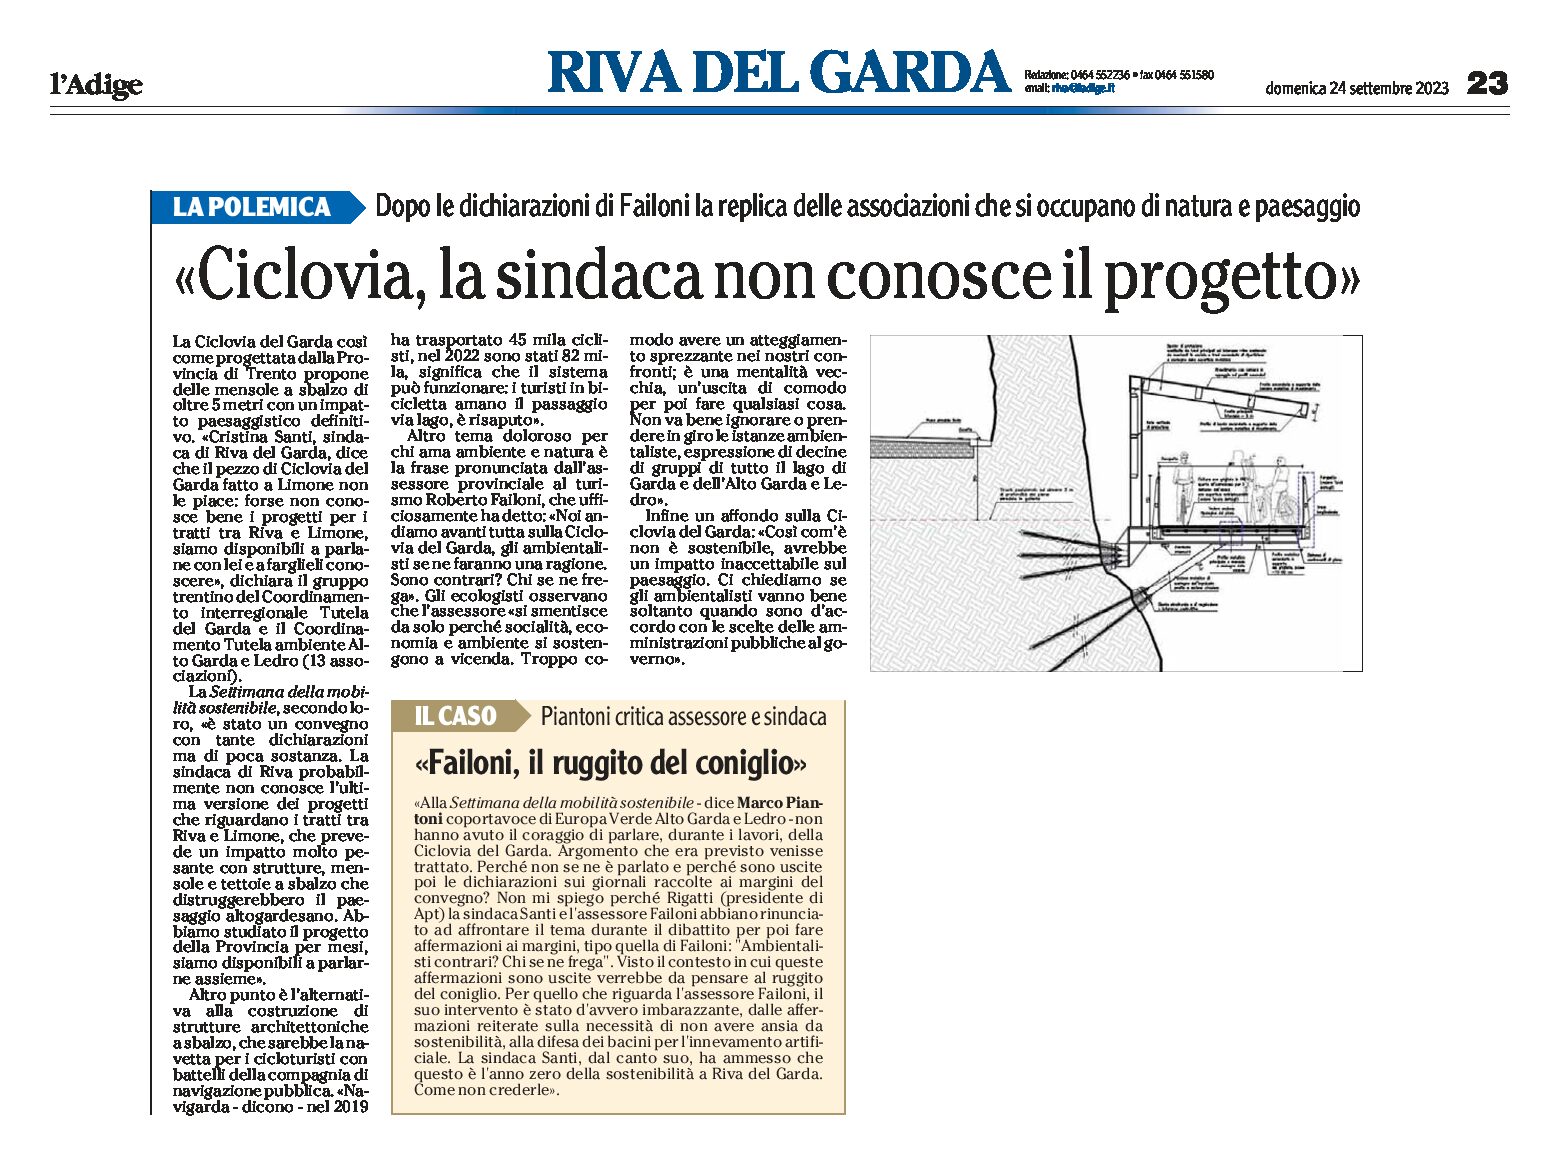 Riva, Ciclovia: la sindaca non conosce il progetto